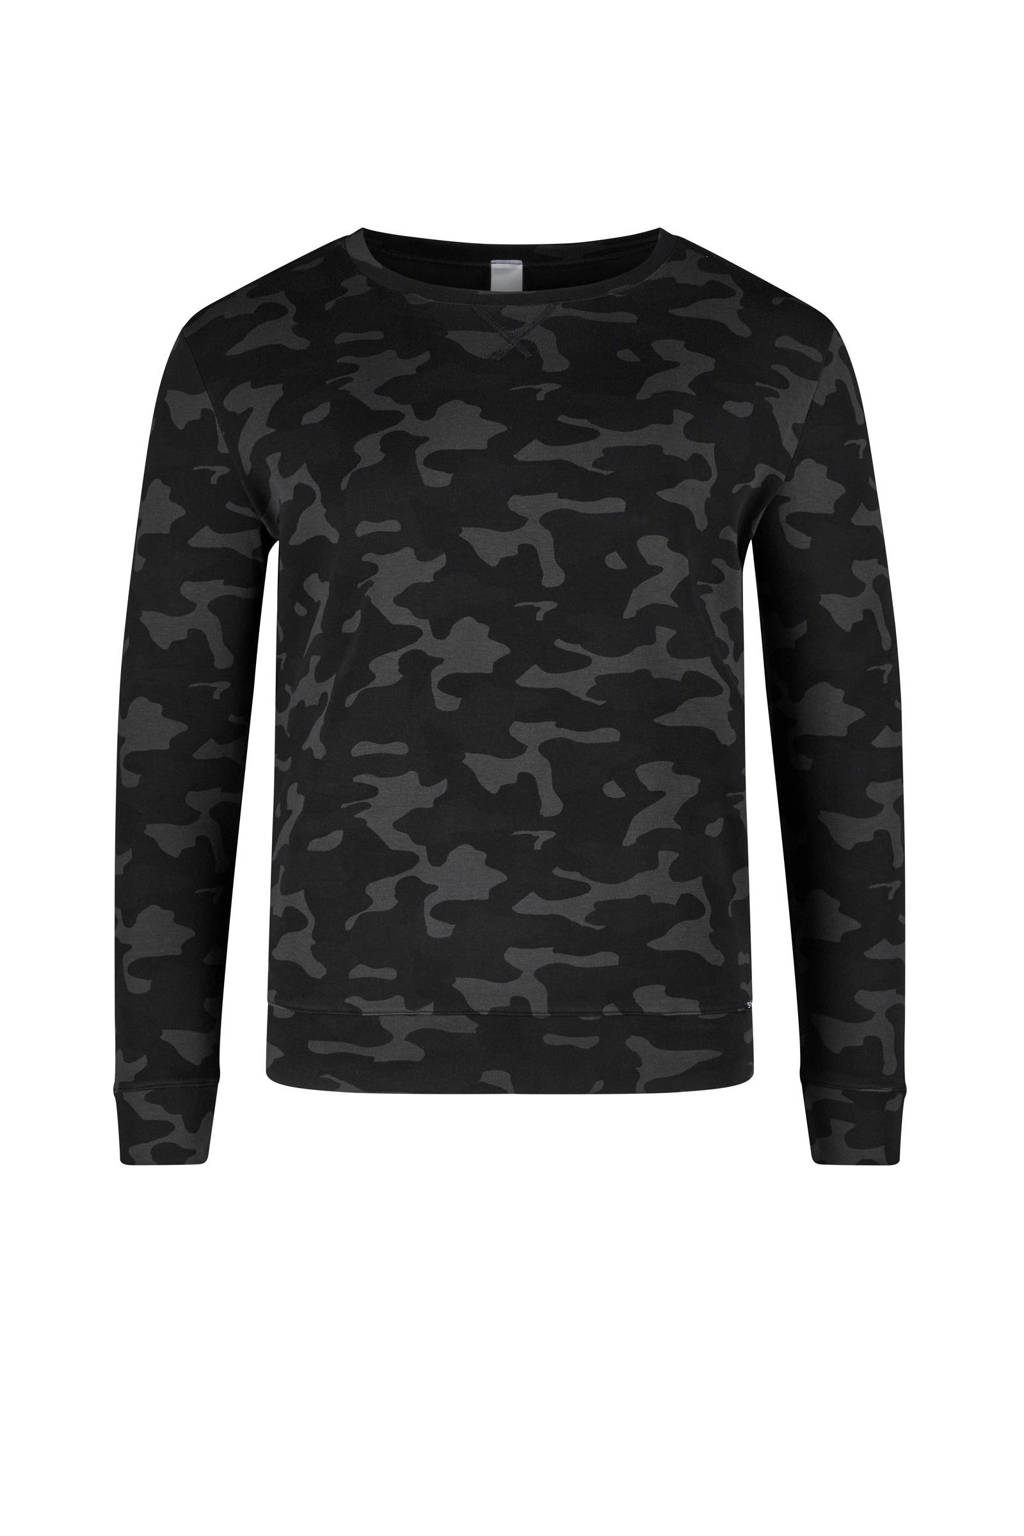 SKINY pyjamatop met camouflageprint zwart/grijs